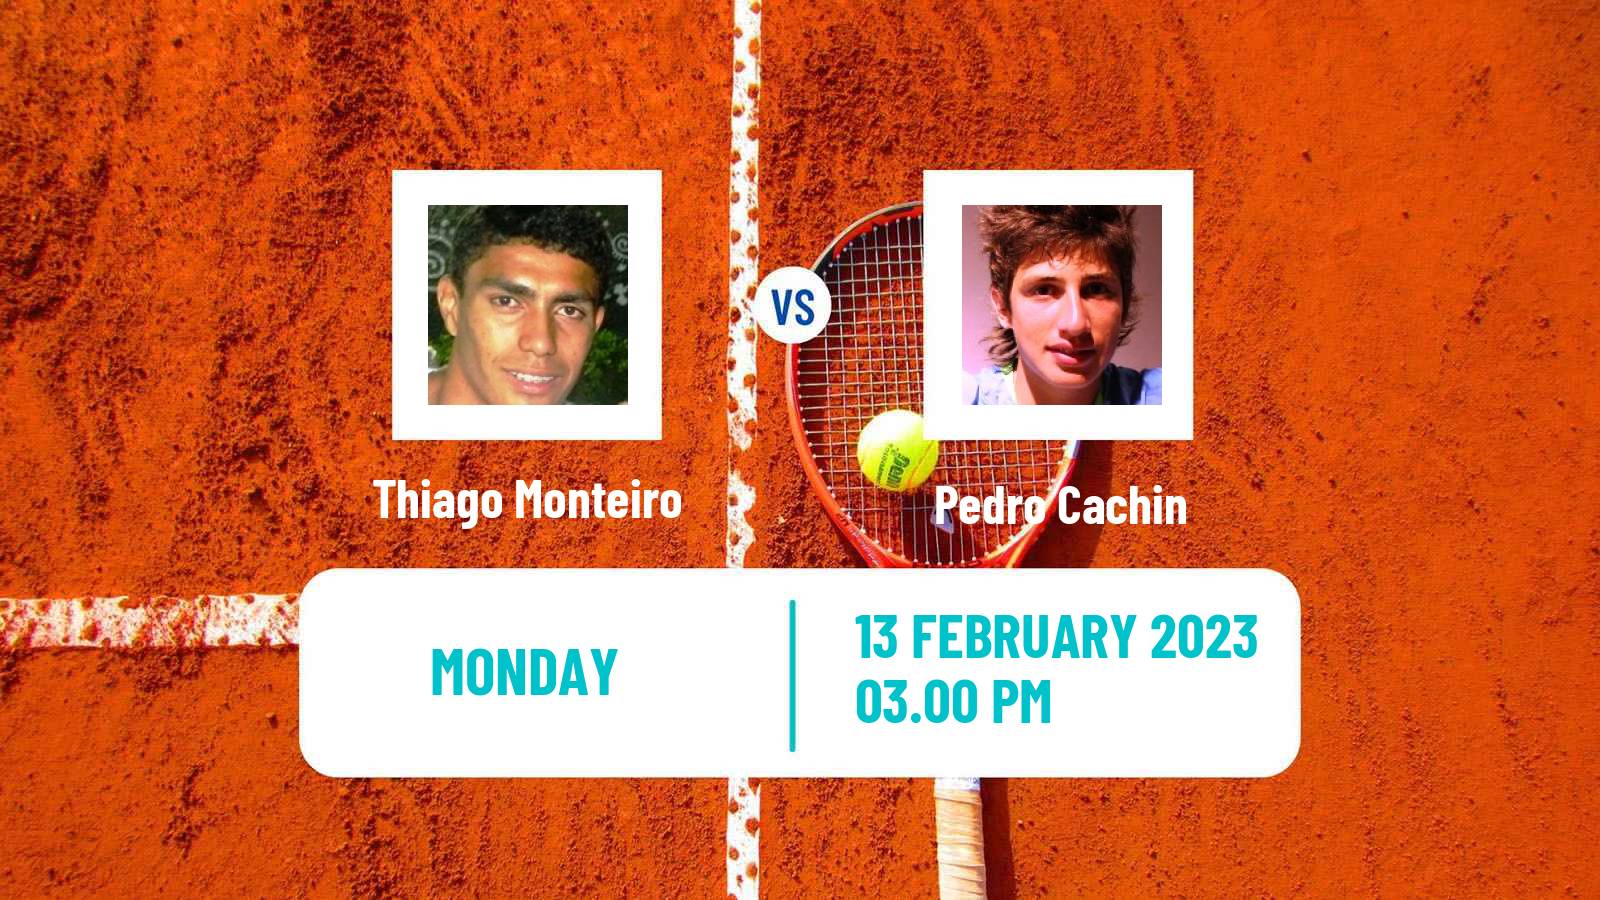 Tennis ATP Buenos Aires Thiago Monteiro - Pedro Cachin